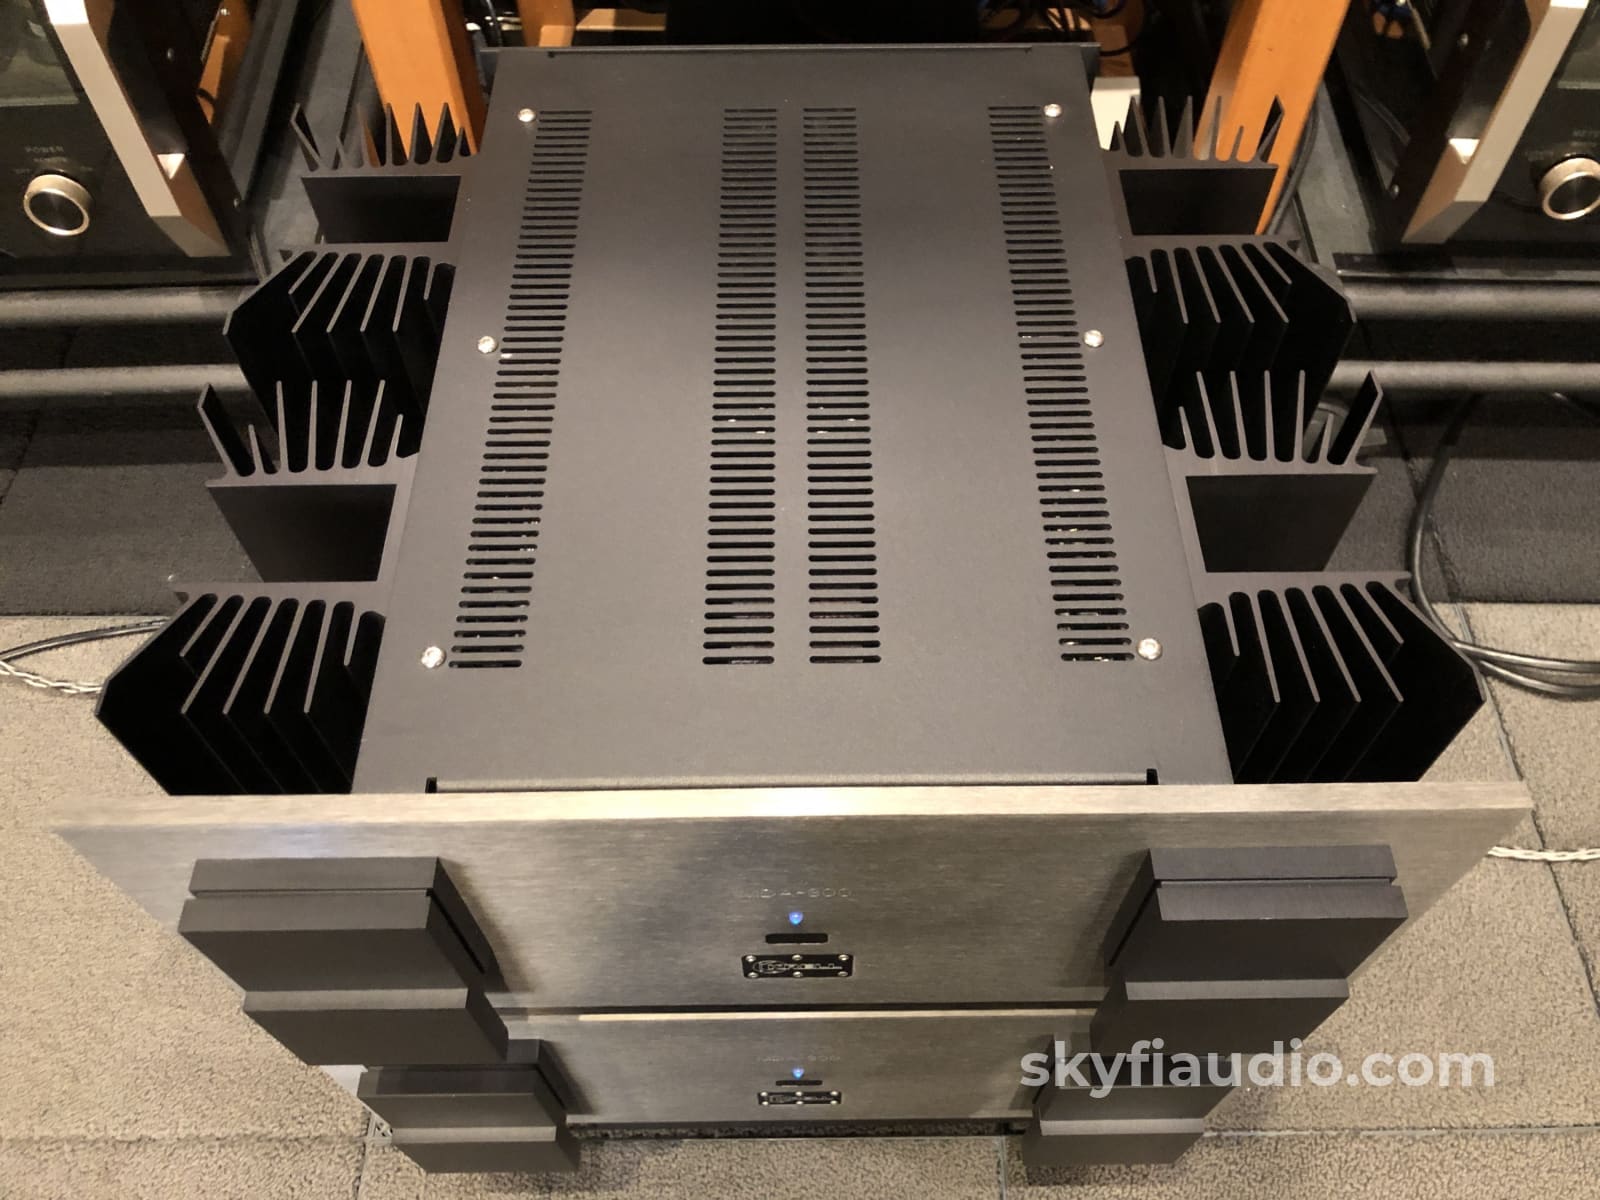 Krell Mda-300 Monoblock Amplifiers - Complete Set Near Mint 300W Amplifier